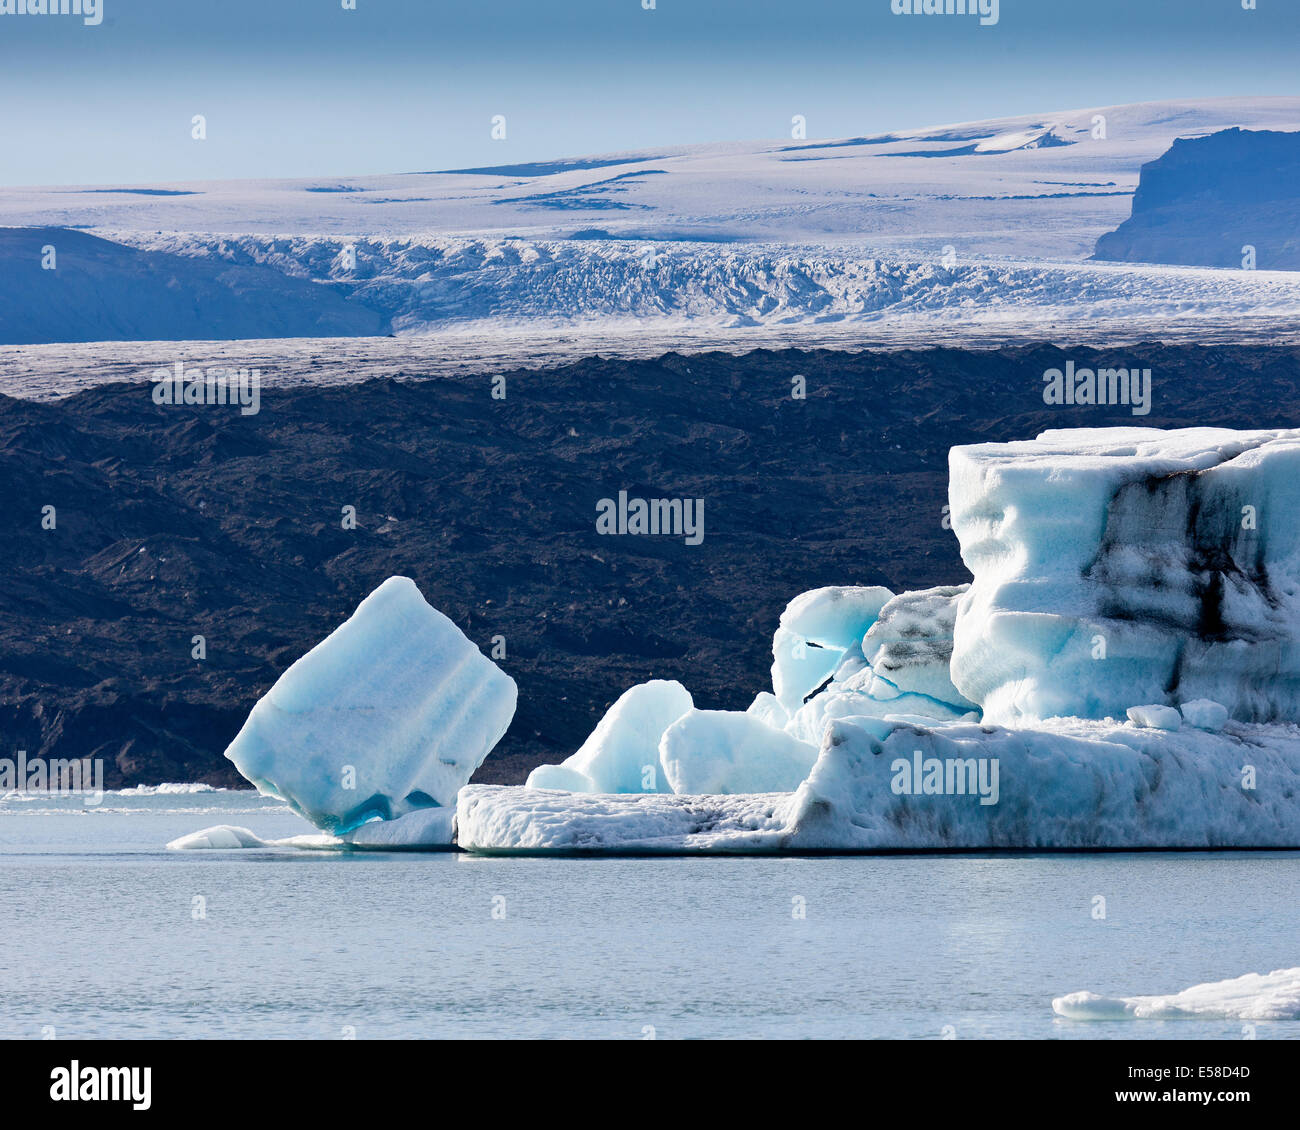 Les icebergs, Jokulsarlon Glacial Lagoon, Breidarmerkurjokull Glacier, calotte de glace, l'Islande Vatnajokull Ash vu dans la glace en raison de volca Banque D'Images